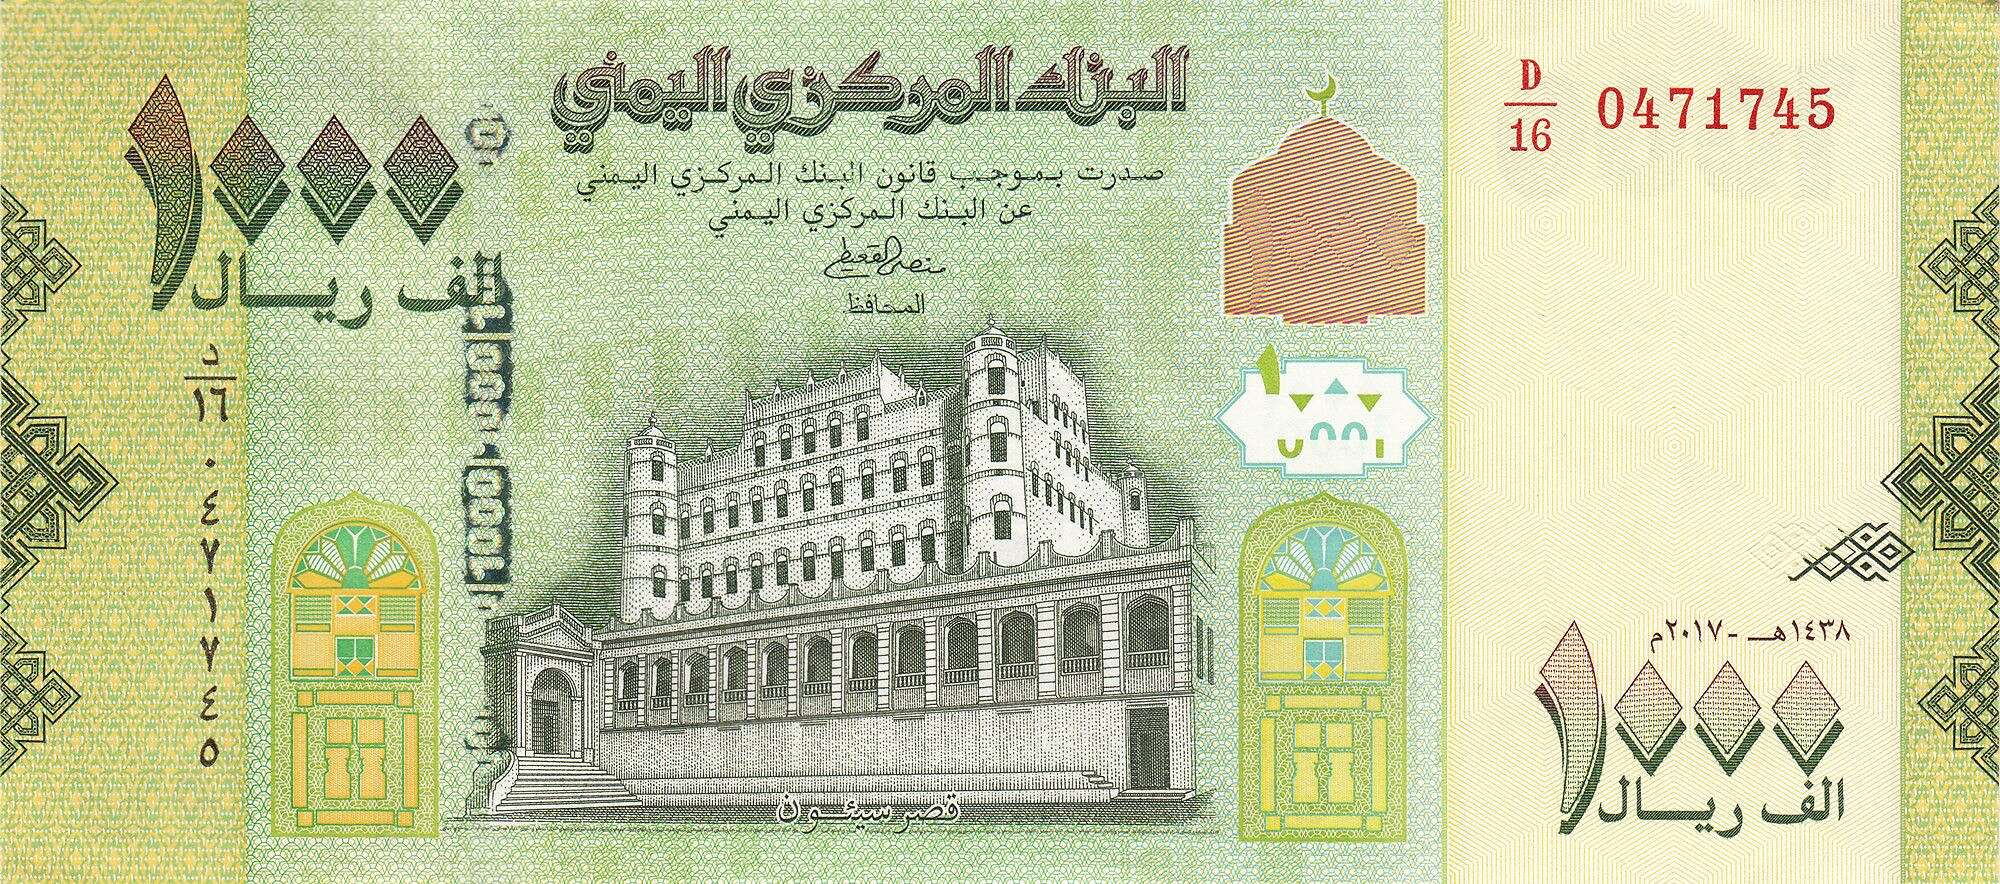 الريال اليمني يسجل قفزة تحسن كبيرة أمام العملات الأجنبية اليوم الاثنين.. آخر تحديث